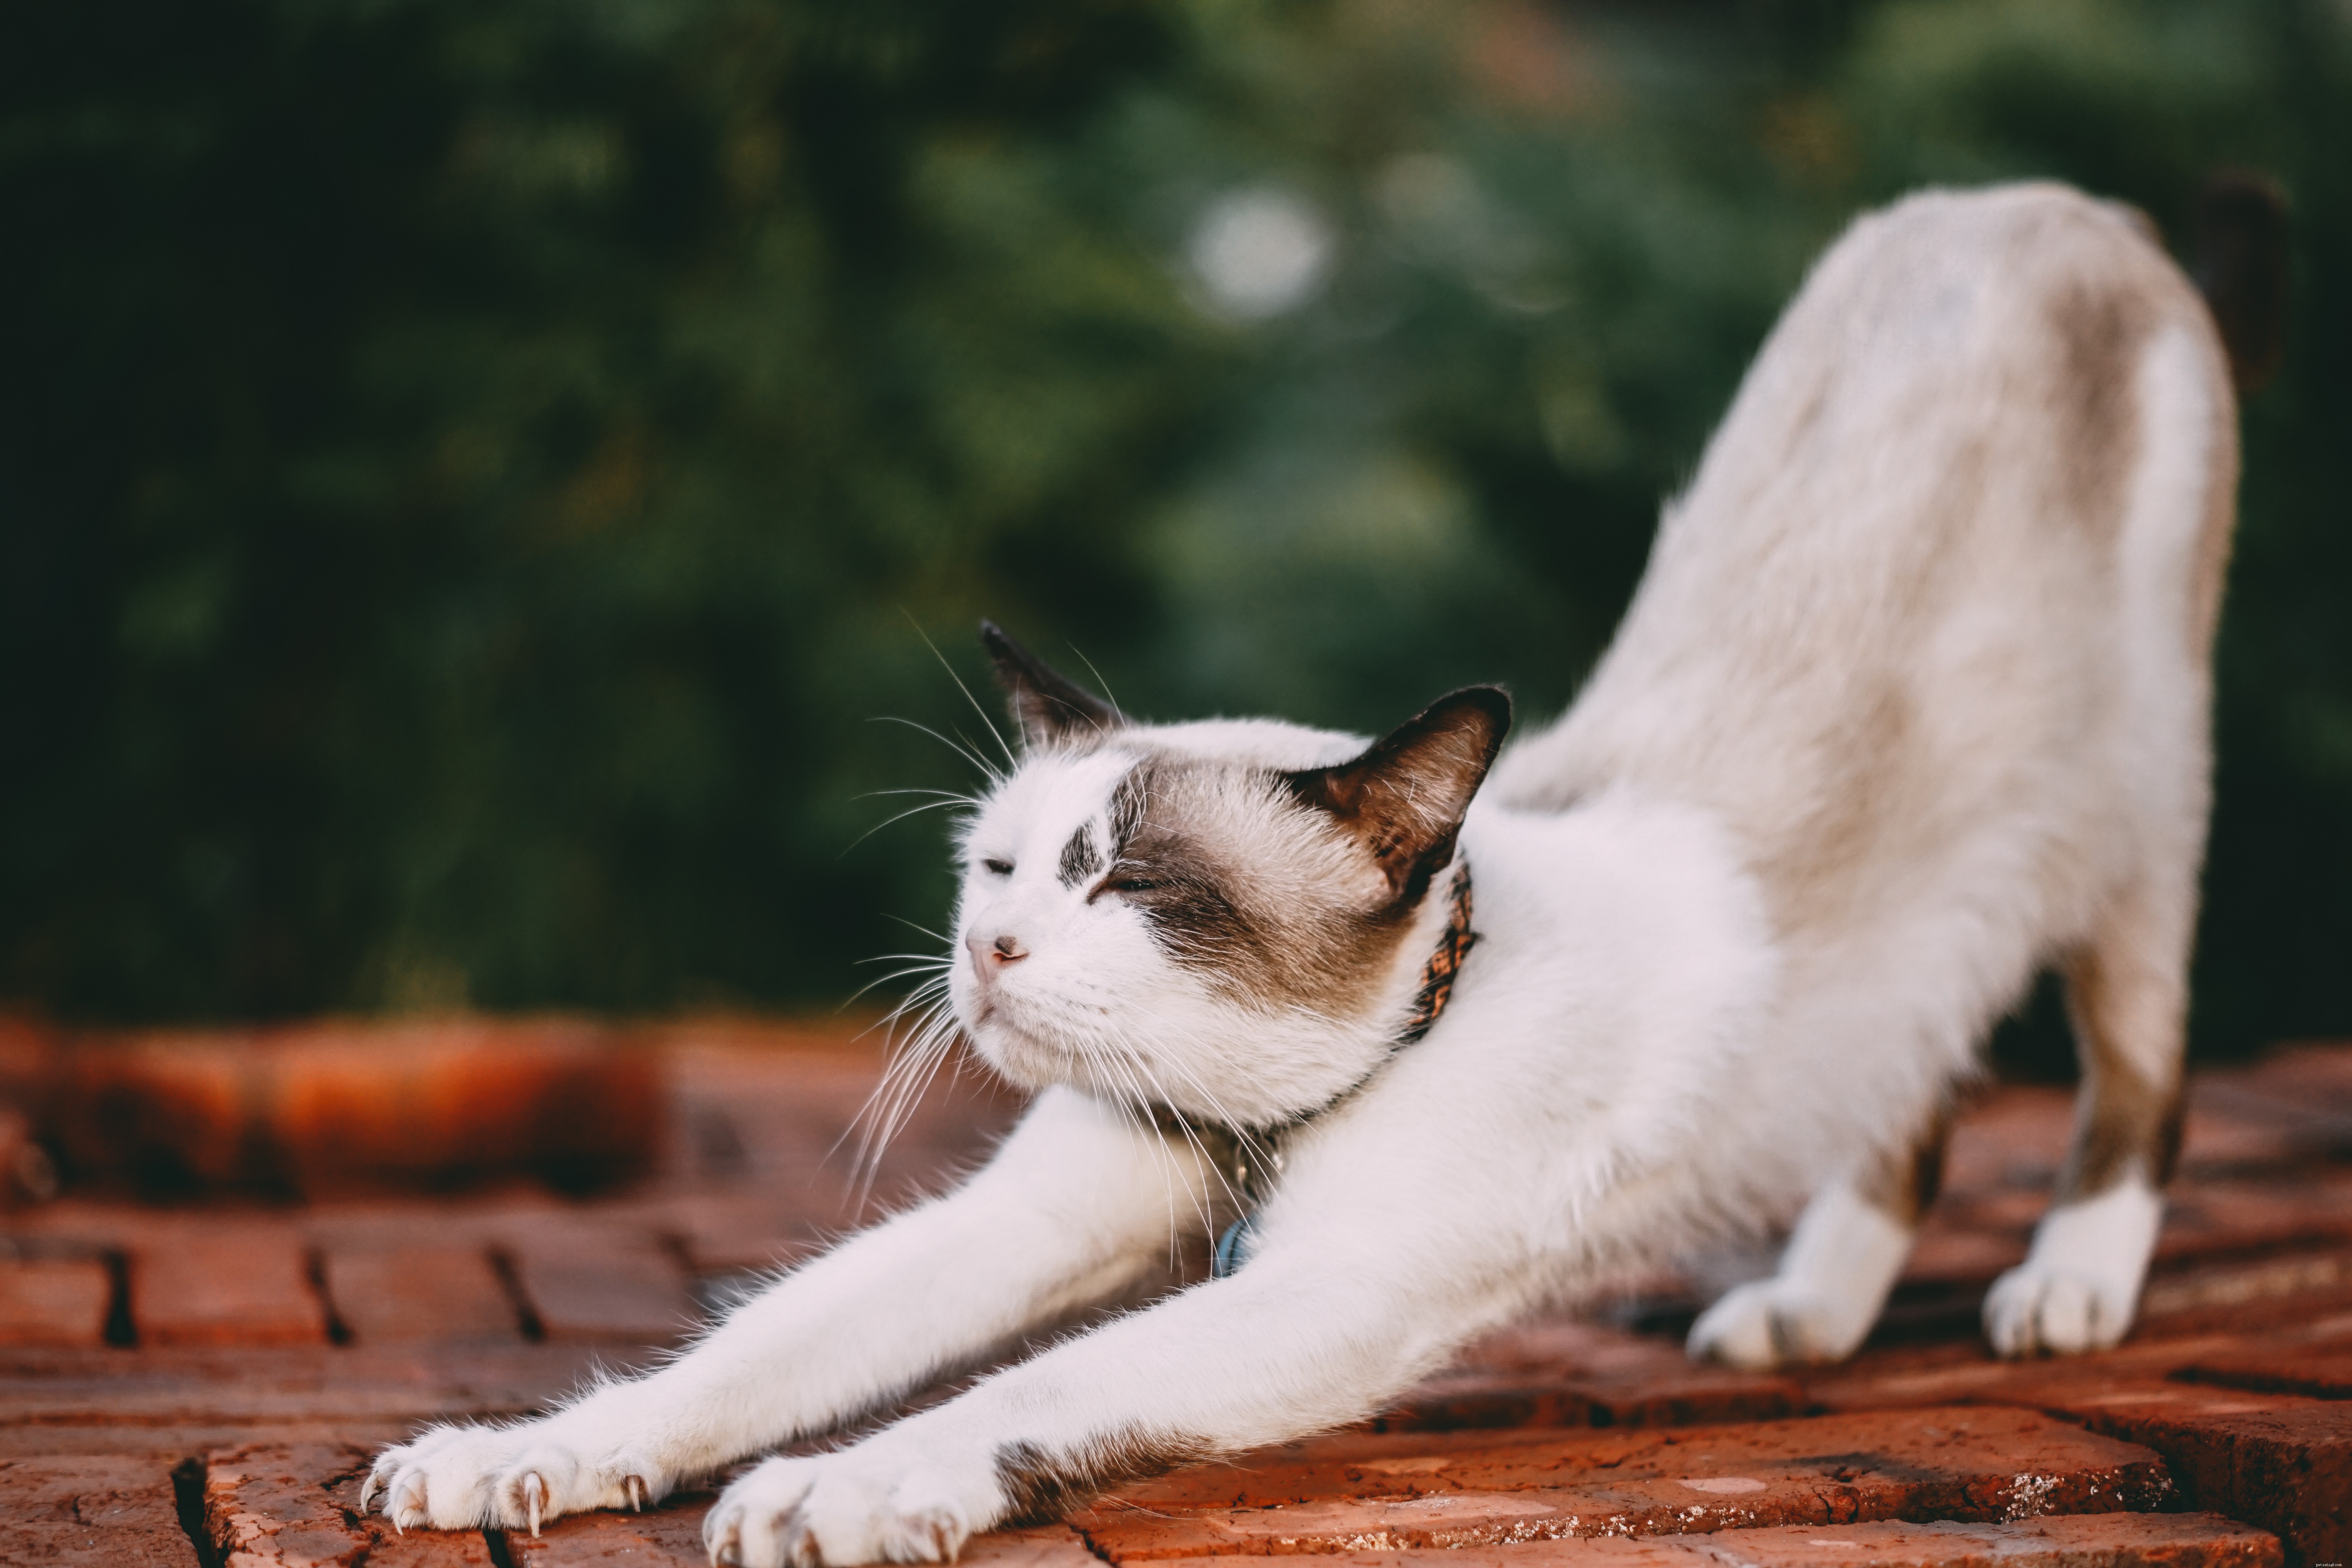 Comment comprendre le comportement et le langage corporel des chats